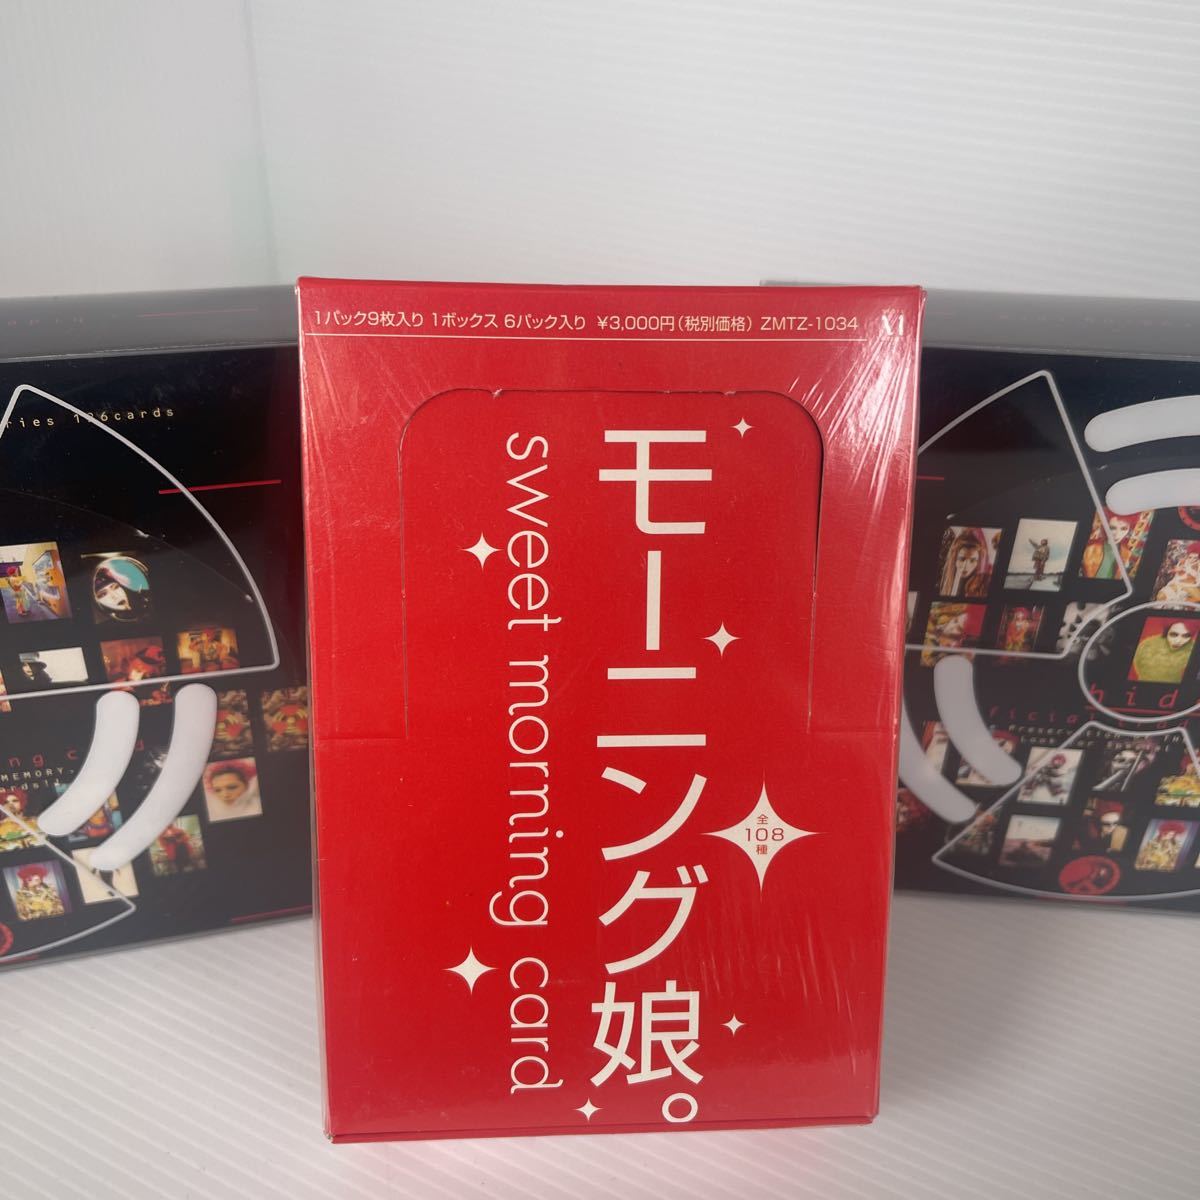 hide オフィシャルトレーディングカード1BOX(12パック入り)、モー娘